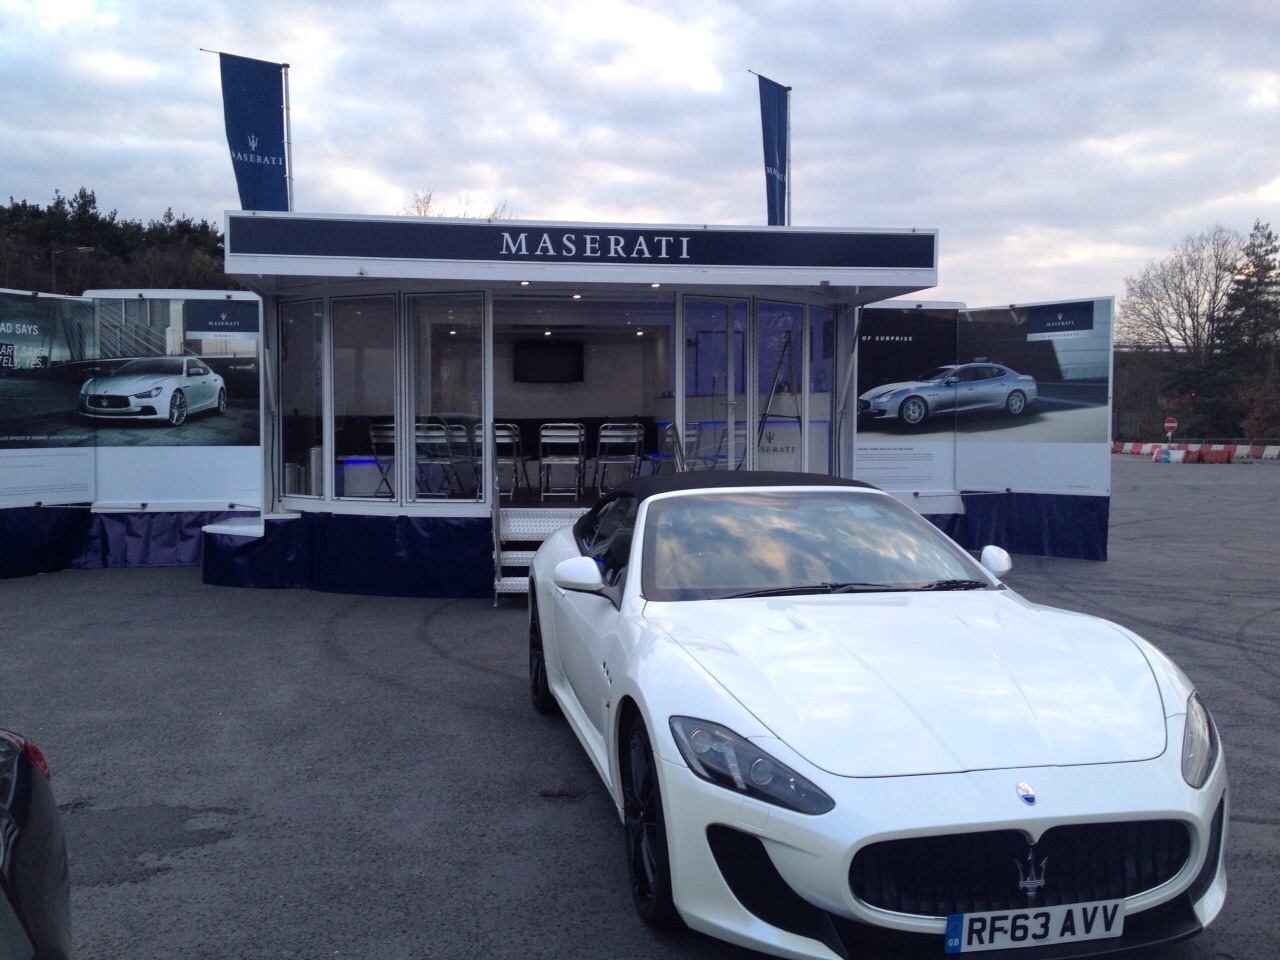 Maserati Exhibition and Hospitality unit show side set up 1